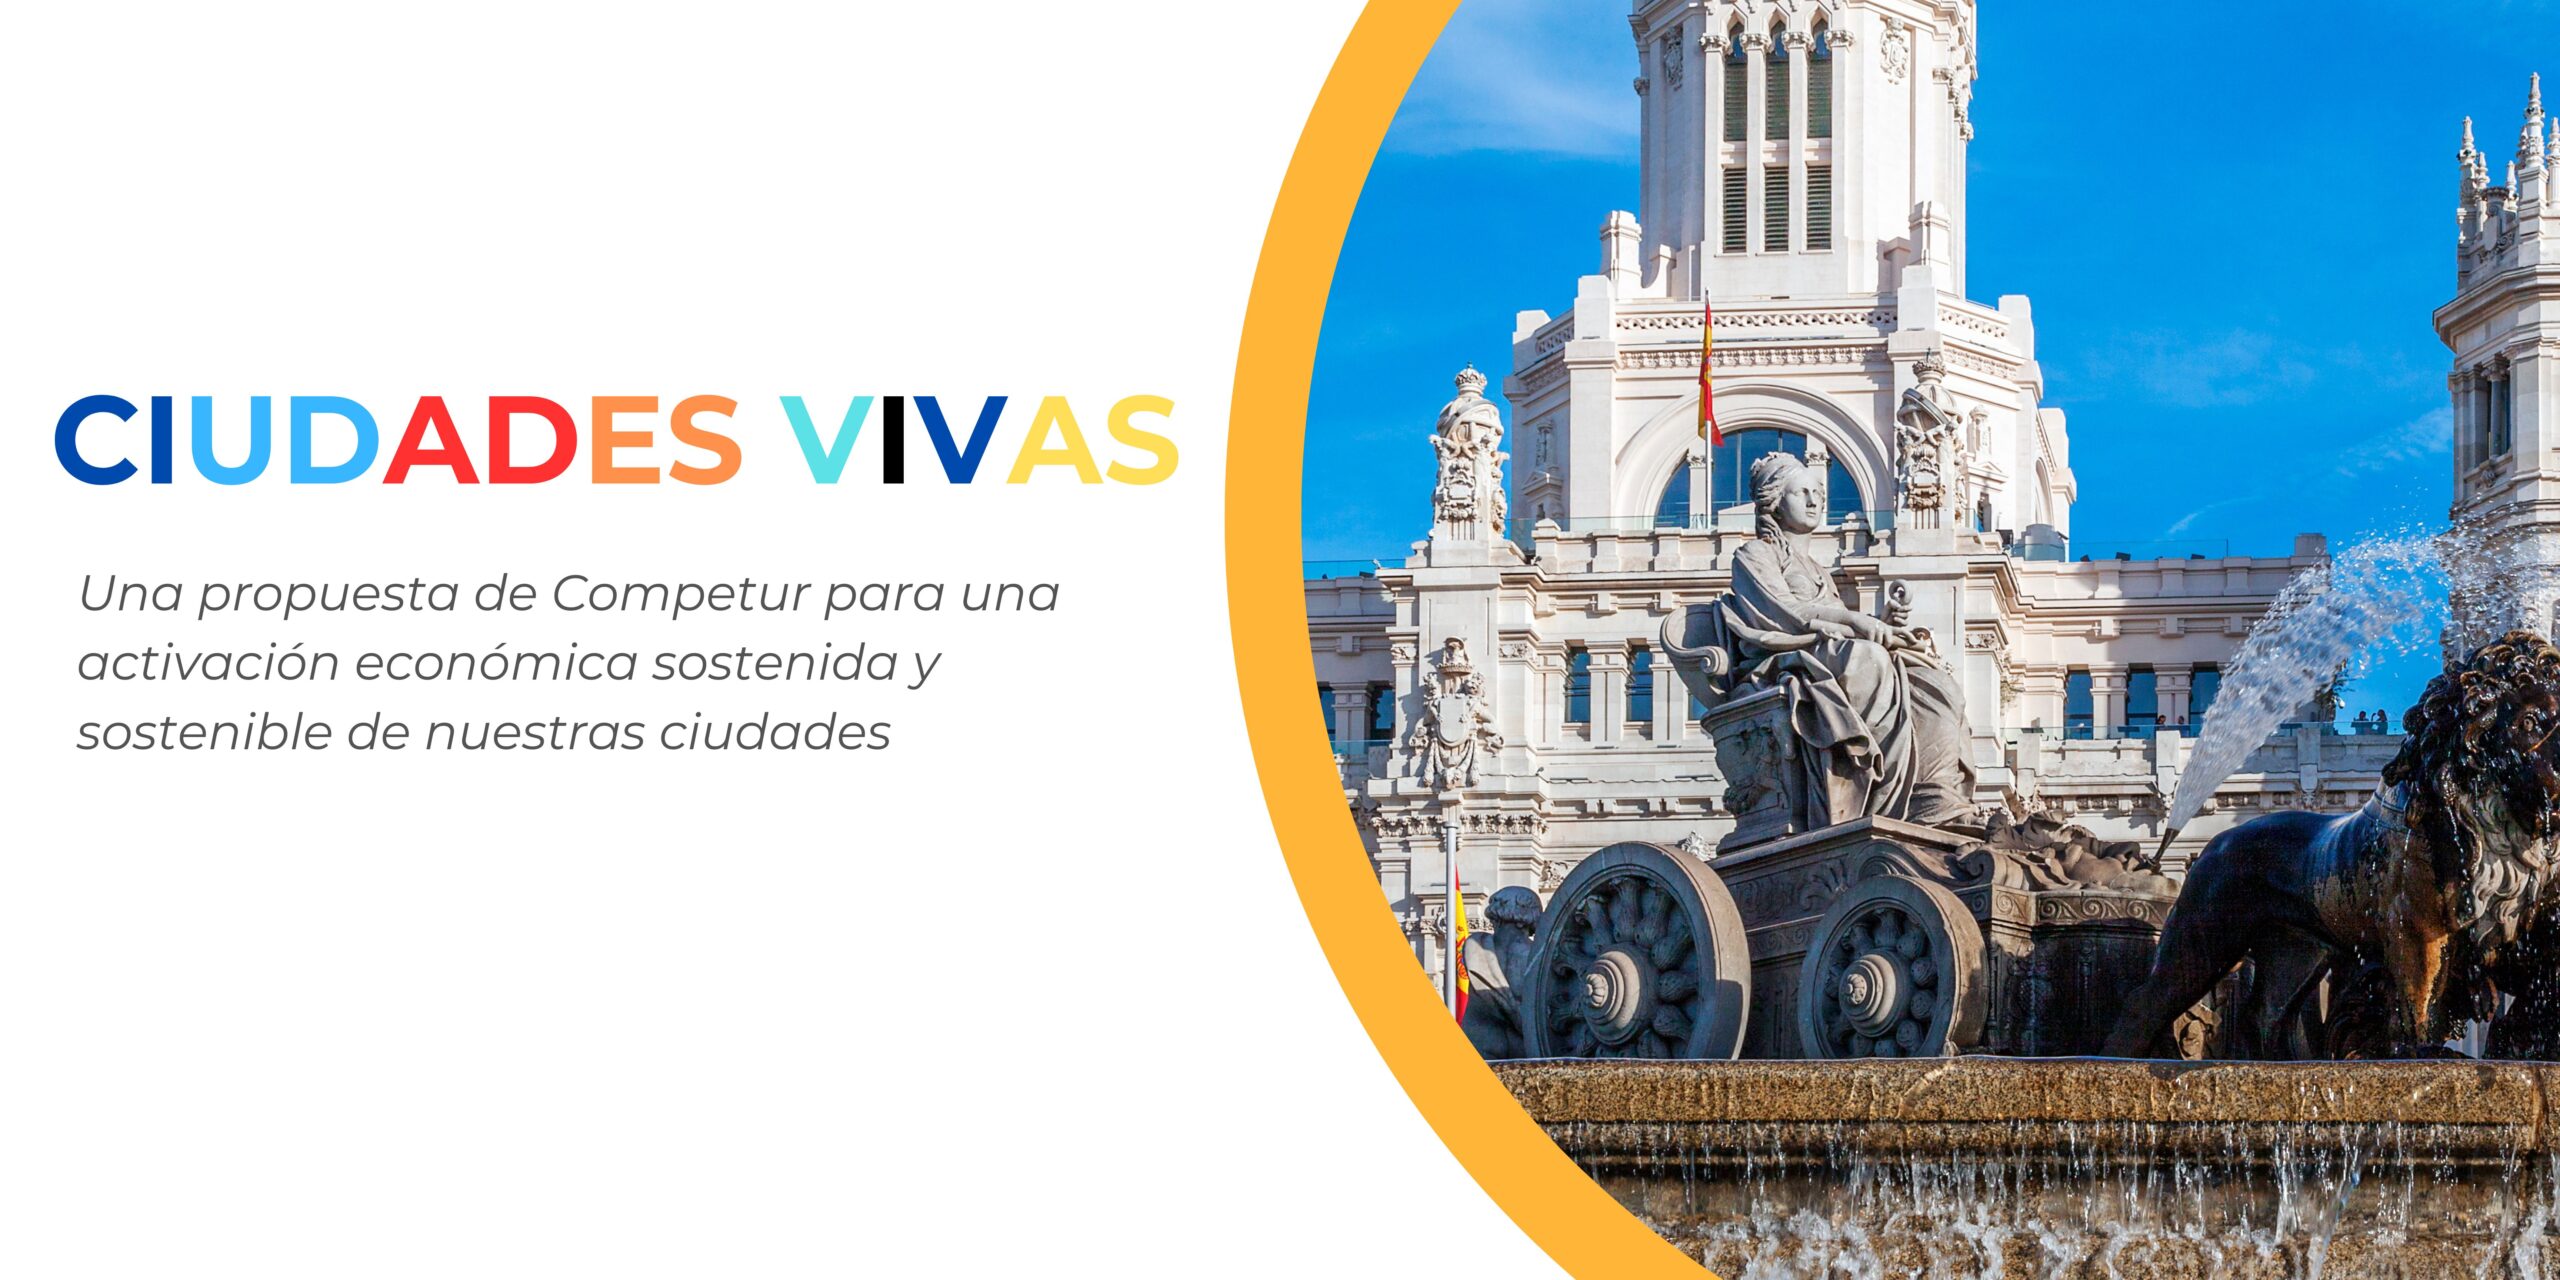 El sector turístico presenta “Ciudades Vivas”, una propuesta para la activación económica y social de las ciudades españolas